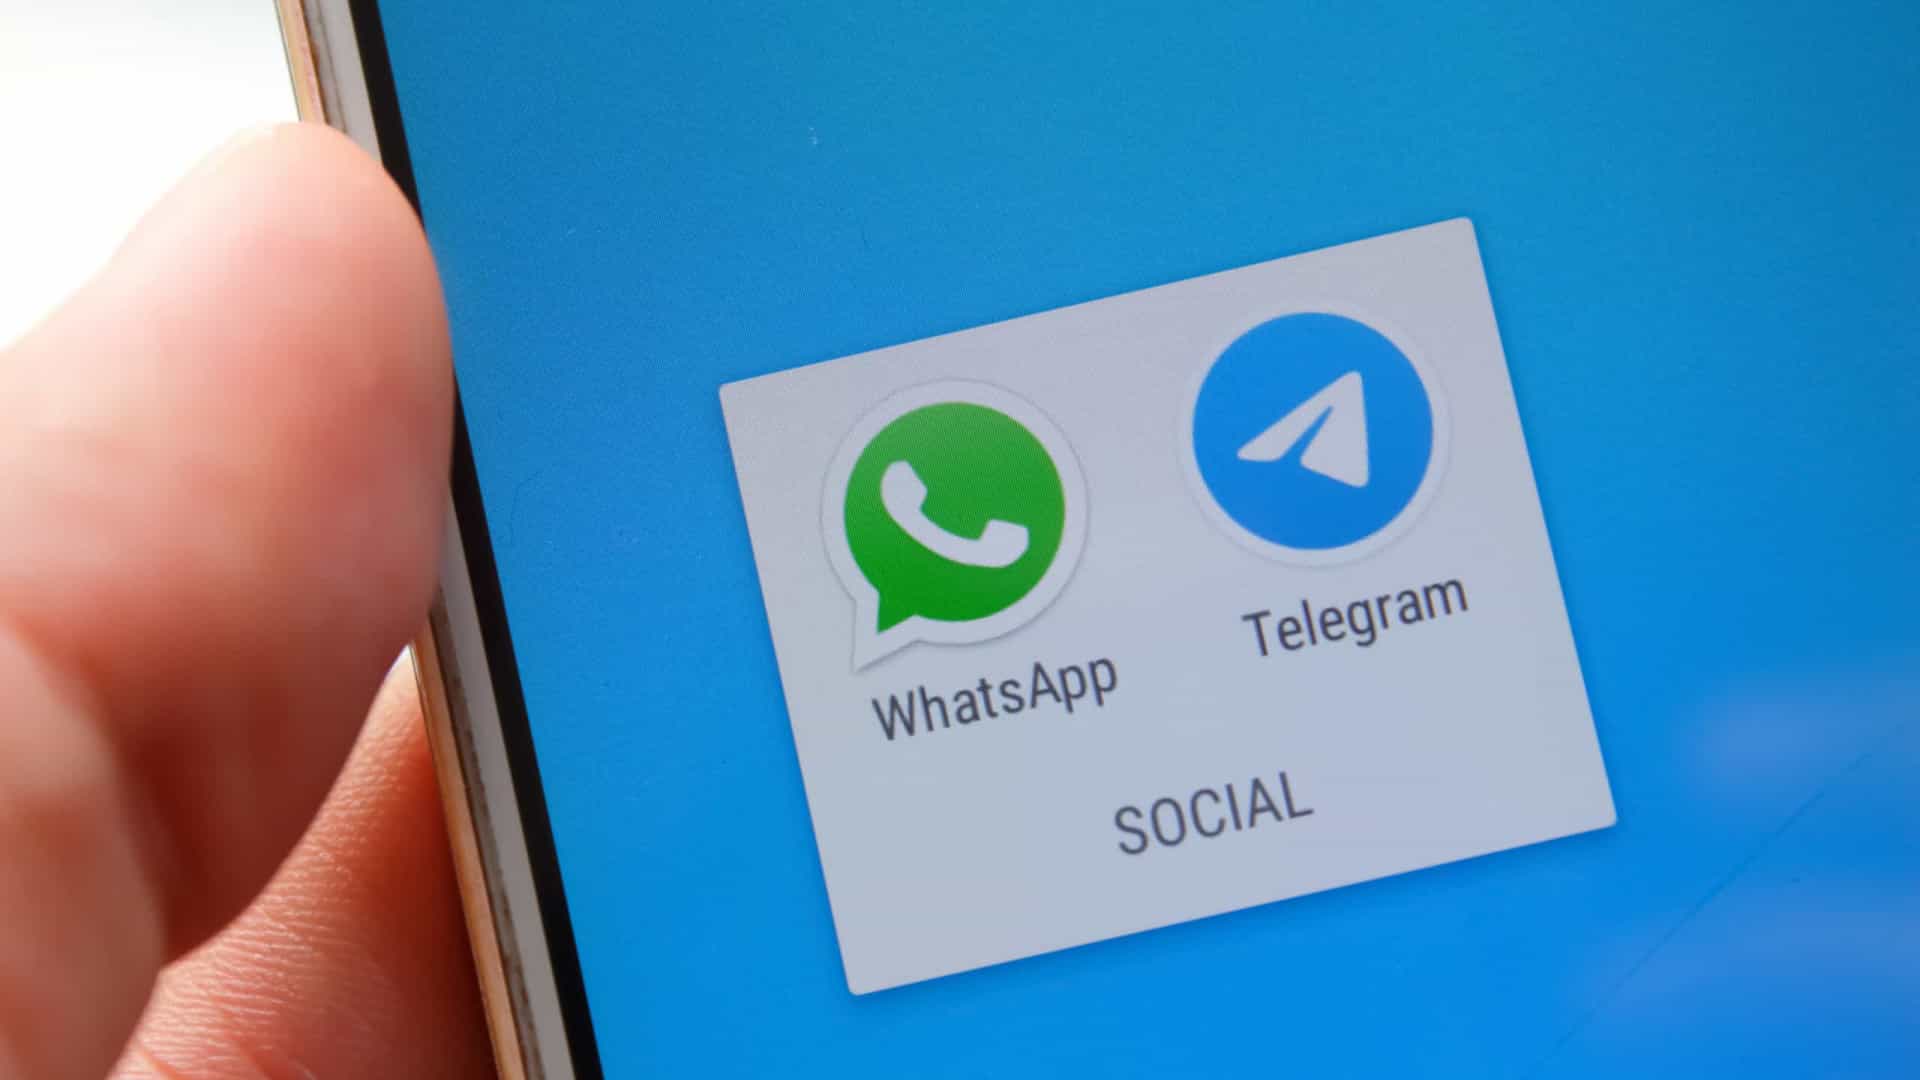 whatsapp e telegram